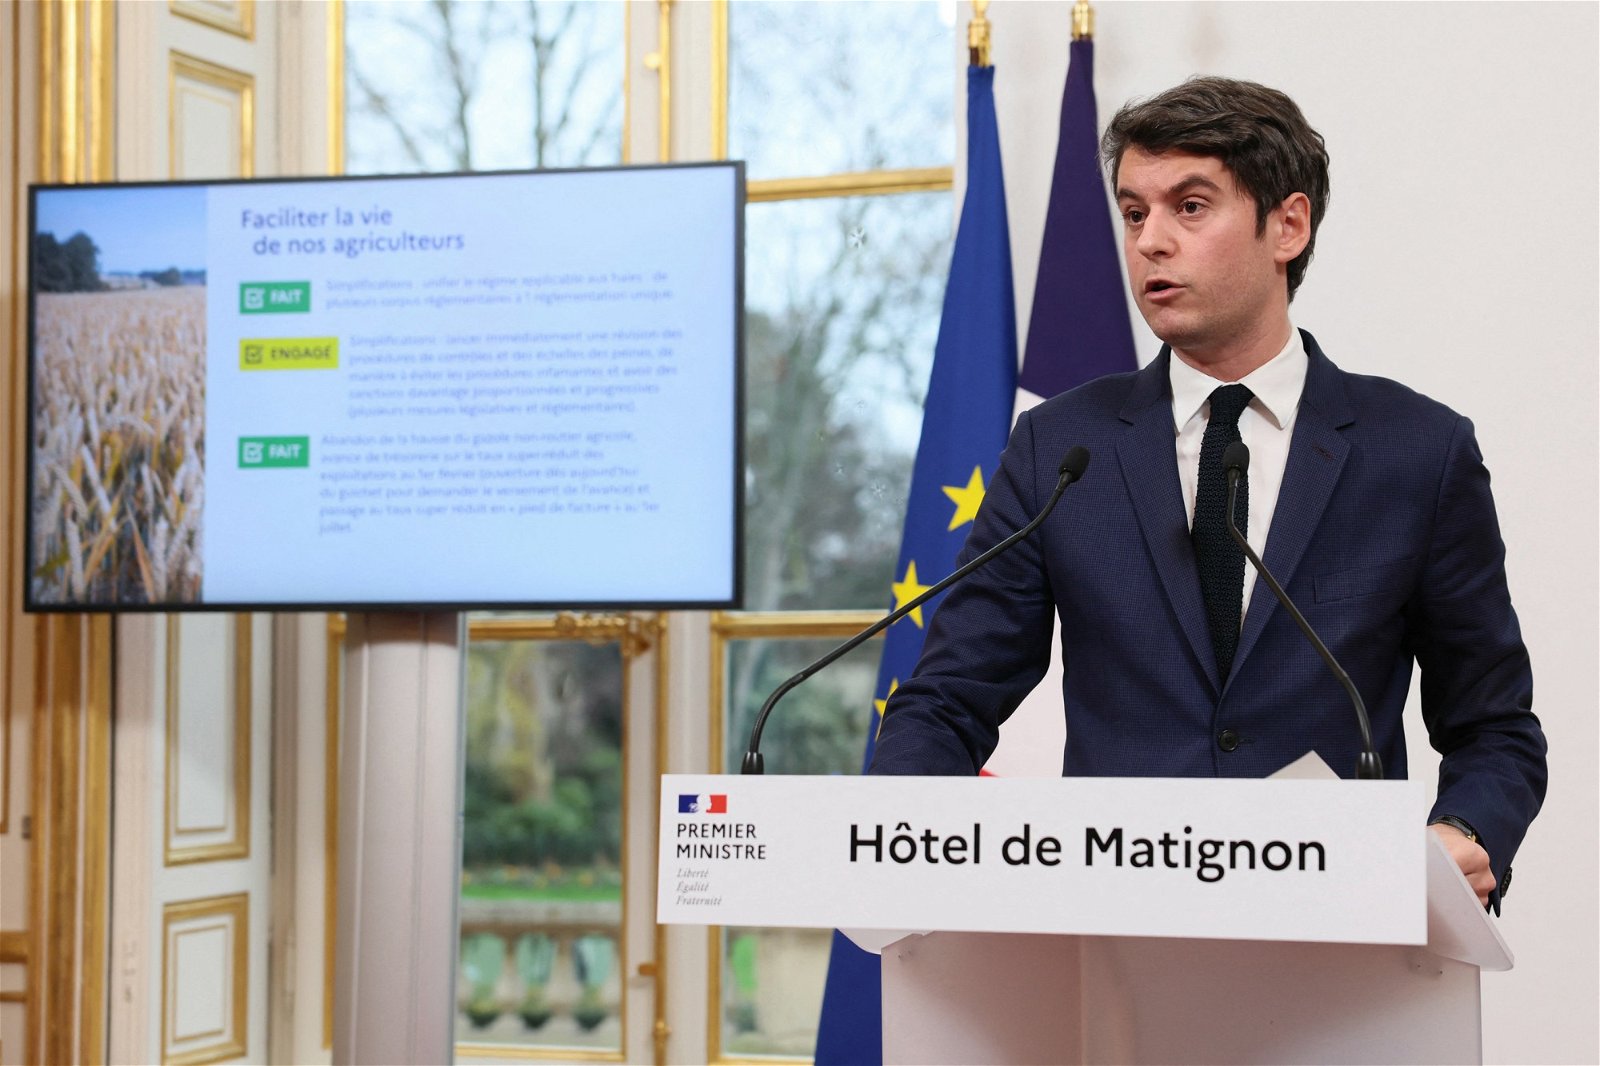 法国总理阿塔尔周三在巴黎马蒂尼翁酒店举行新闻发布会上，对抗议工资、税收和监管的农民发表讲话。（图取自法新社）